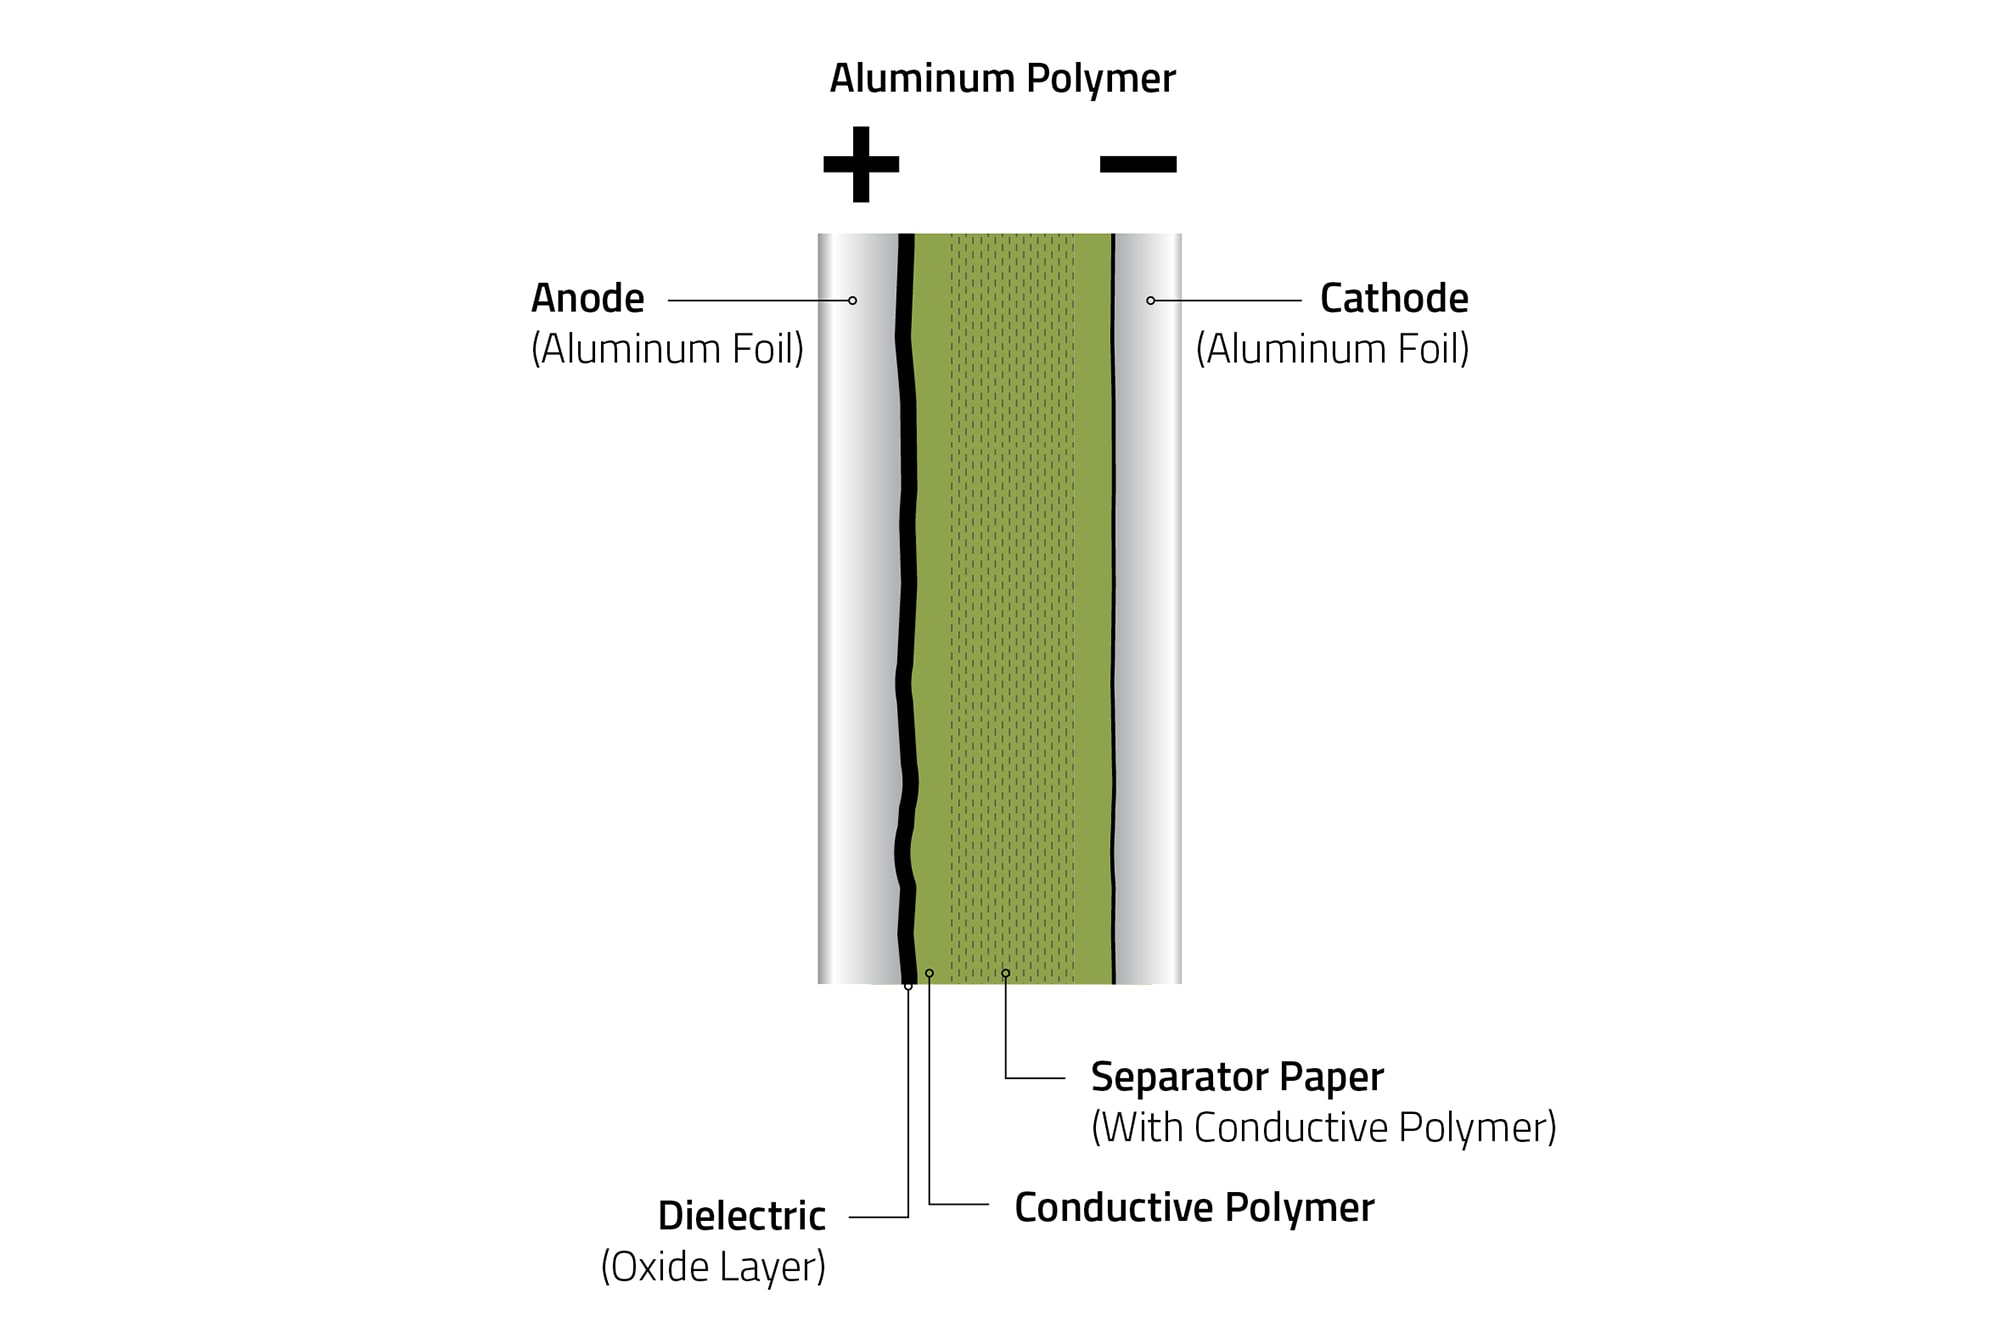 Die Aluminiumfolie der Anode wird vor dem Wicklungsprozess durch eine anodische Oxidation formiert, sodass das Dielektrikum (Oxidschicht) verstärkt wird. Der Wickel wird fertigungsseitig mit einem Monomer imprägniert. Durch eine Polymerisation bildet sich das hochleitfähige Polymer. Die Papierzwischenlage sorgt für einen gleichmäßigen Aufbau sowie für einen definierten Abstand zwischen Anoden- und Kathodenfolie.